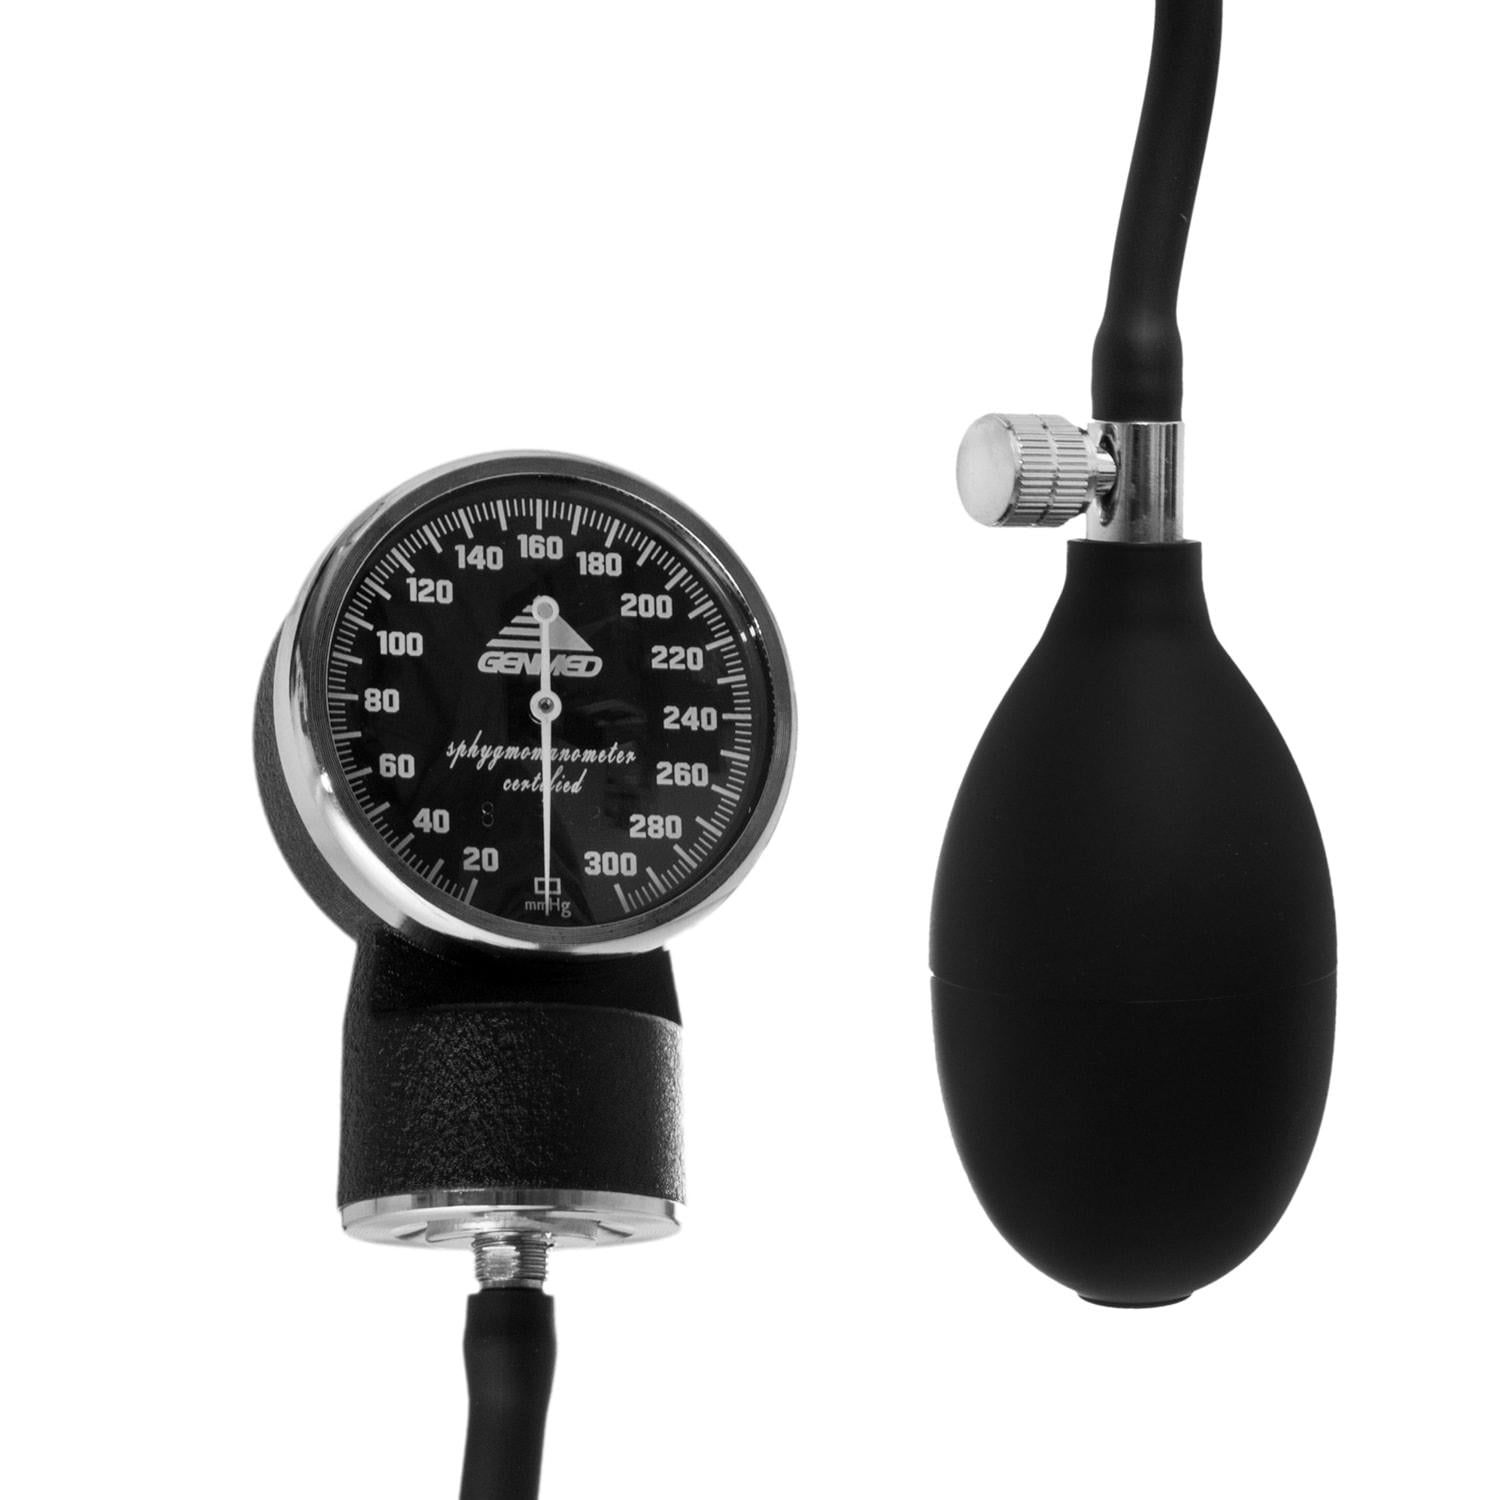 Saint Health baumanometro digital de brazo tensiometro completo de